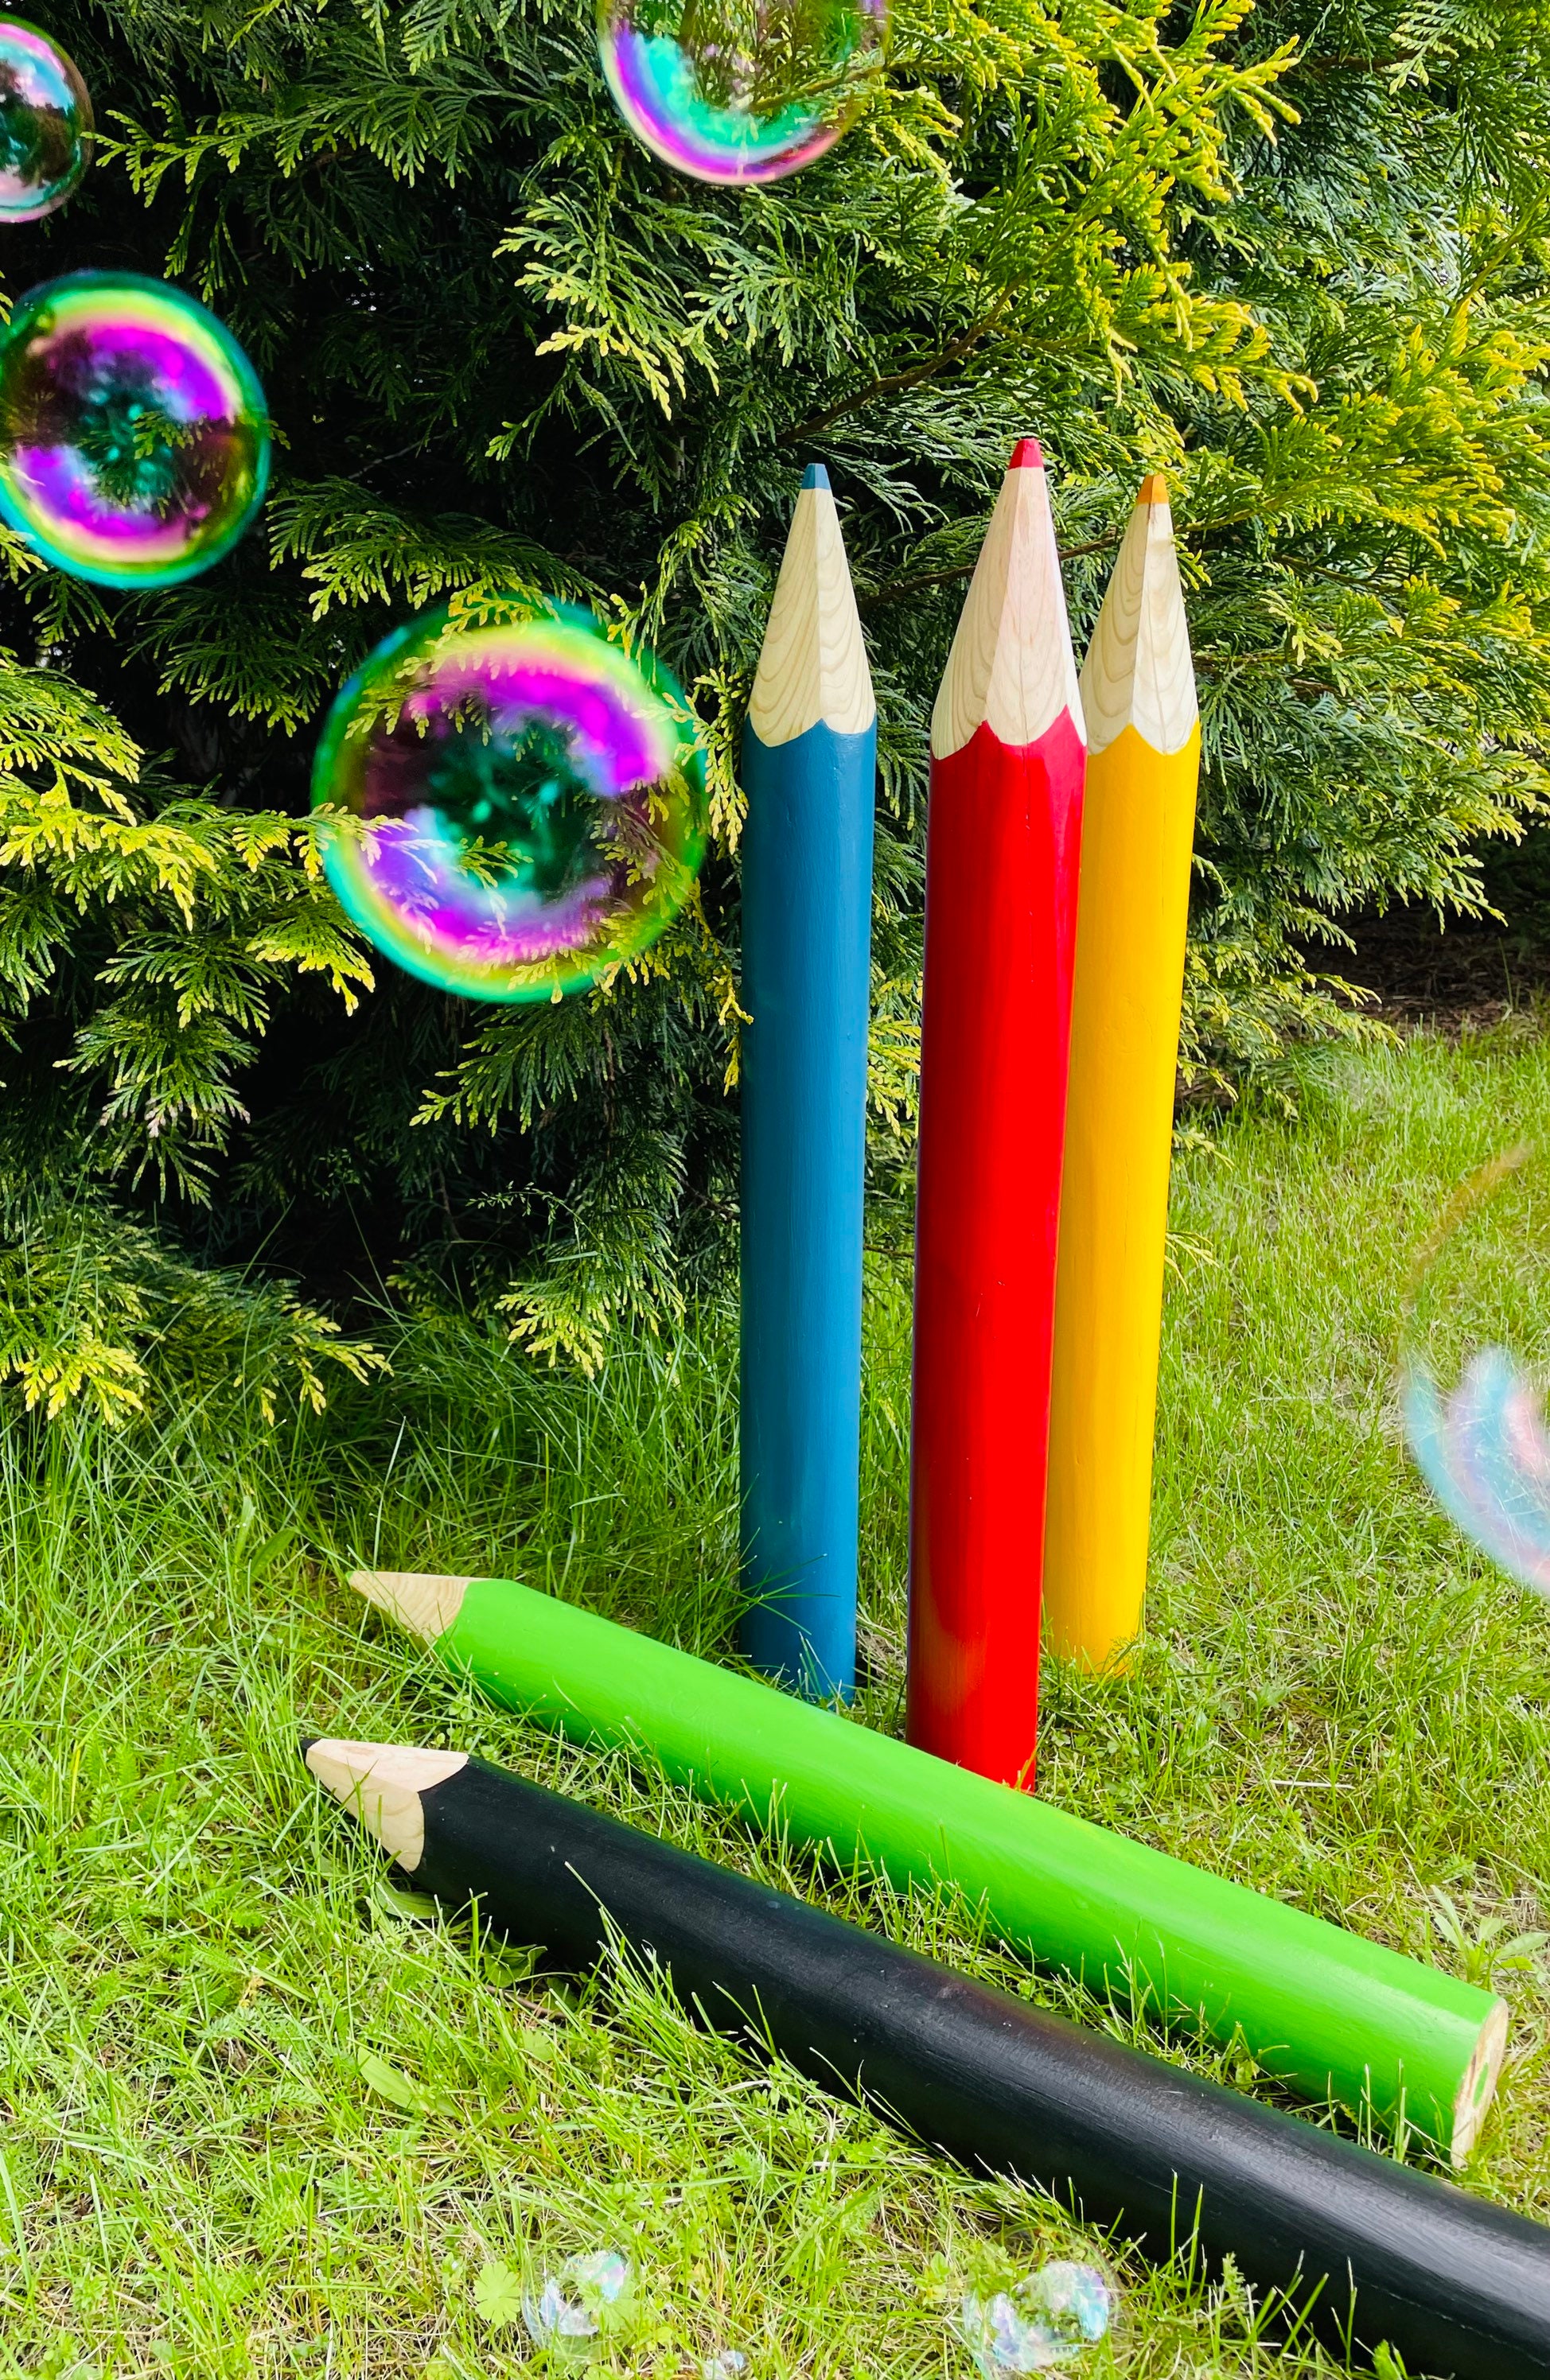 Crayolas gigante in 2023  Crayola birthday party, Art classroom decor,  School crafts